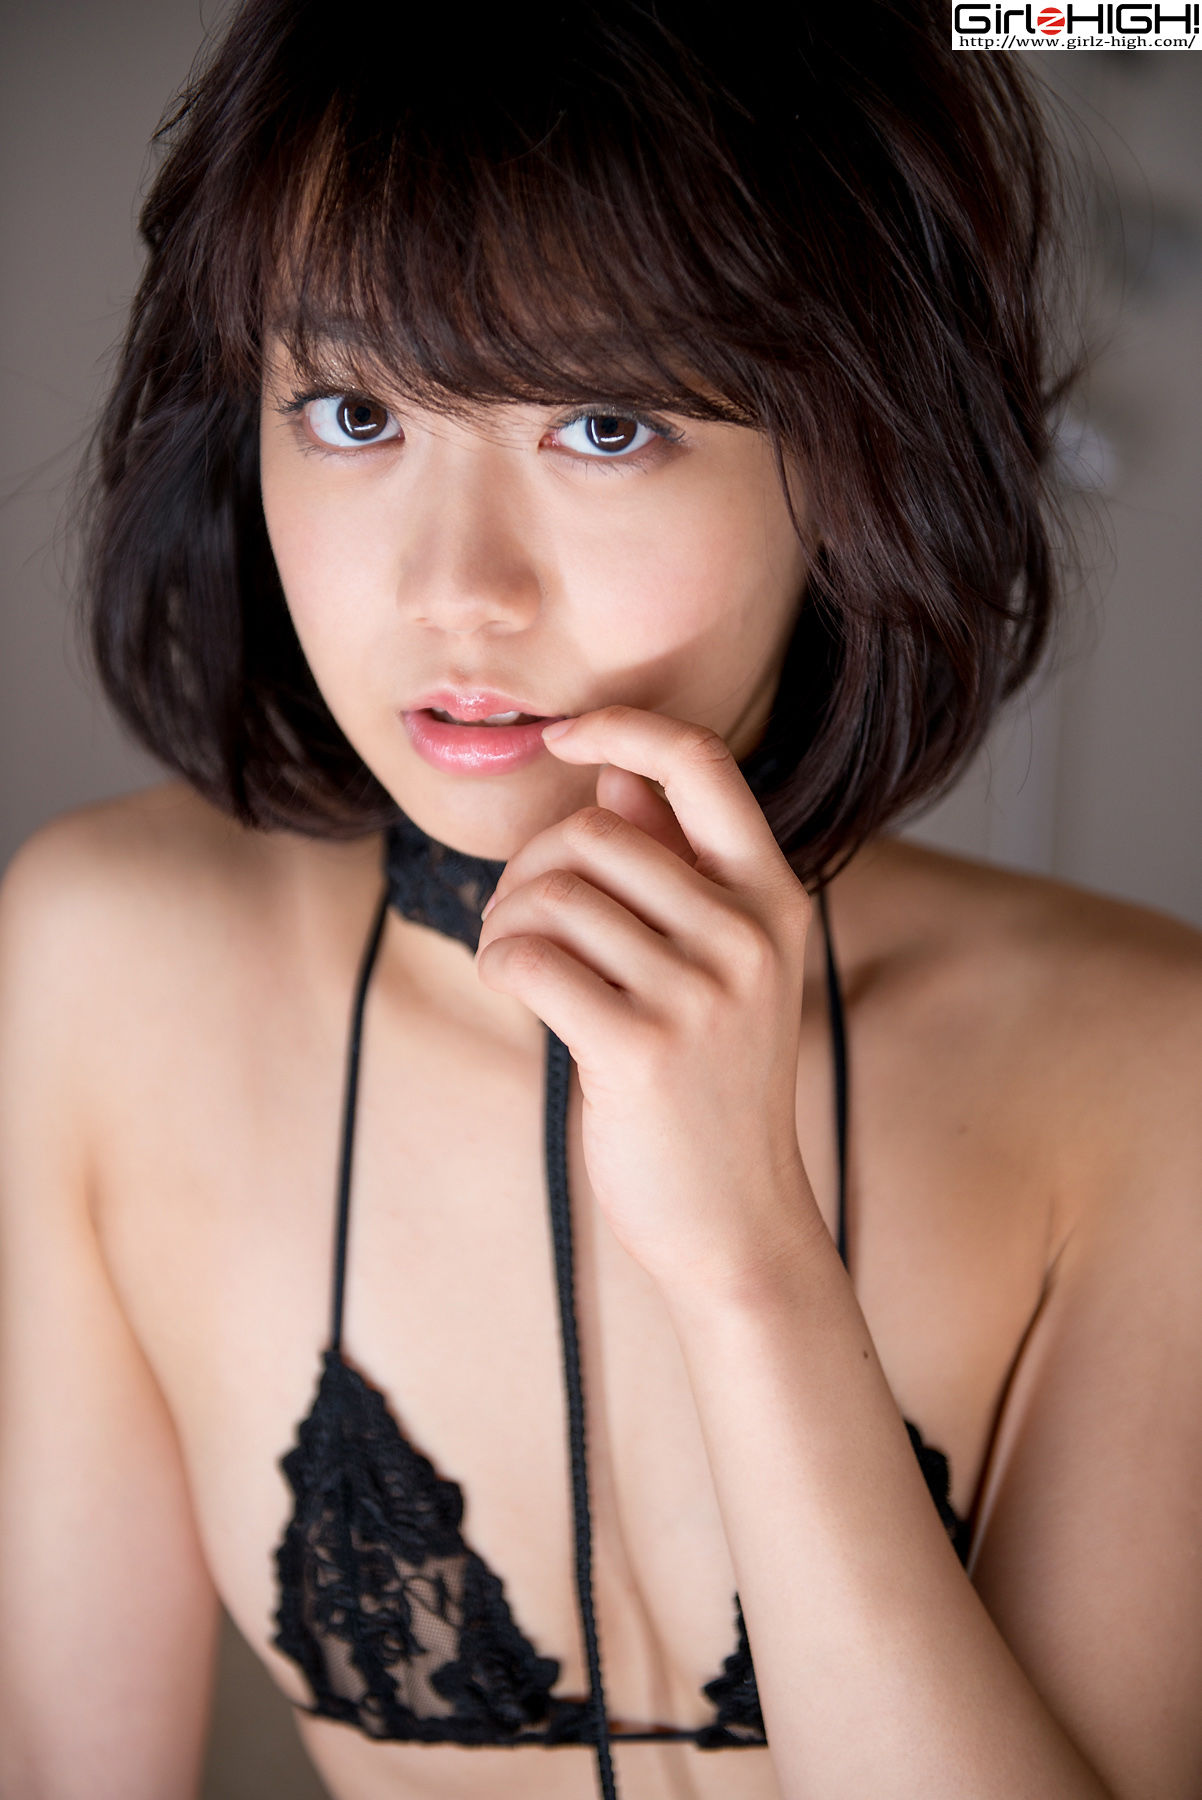 Koharu Nishino Koharu Nishino --bkoh_006_002 [Girlz-High] Page 31 No.170a16